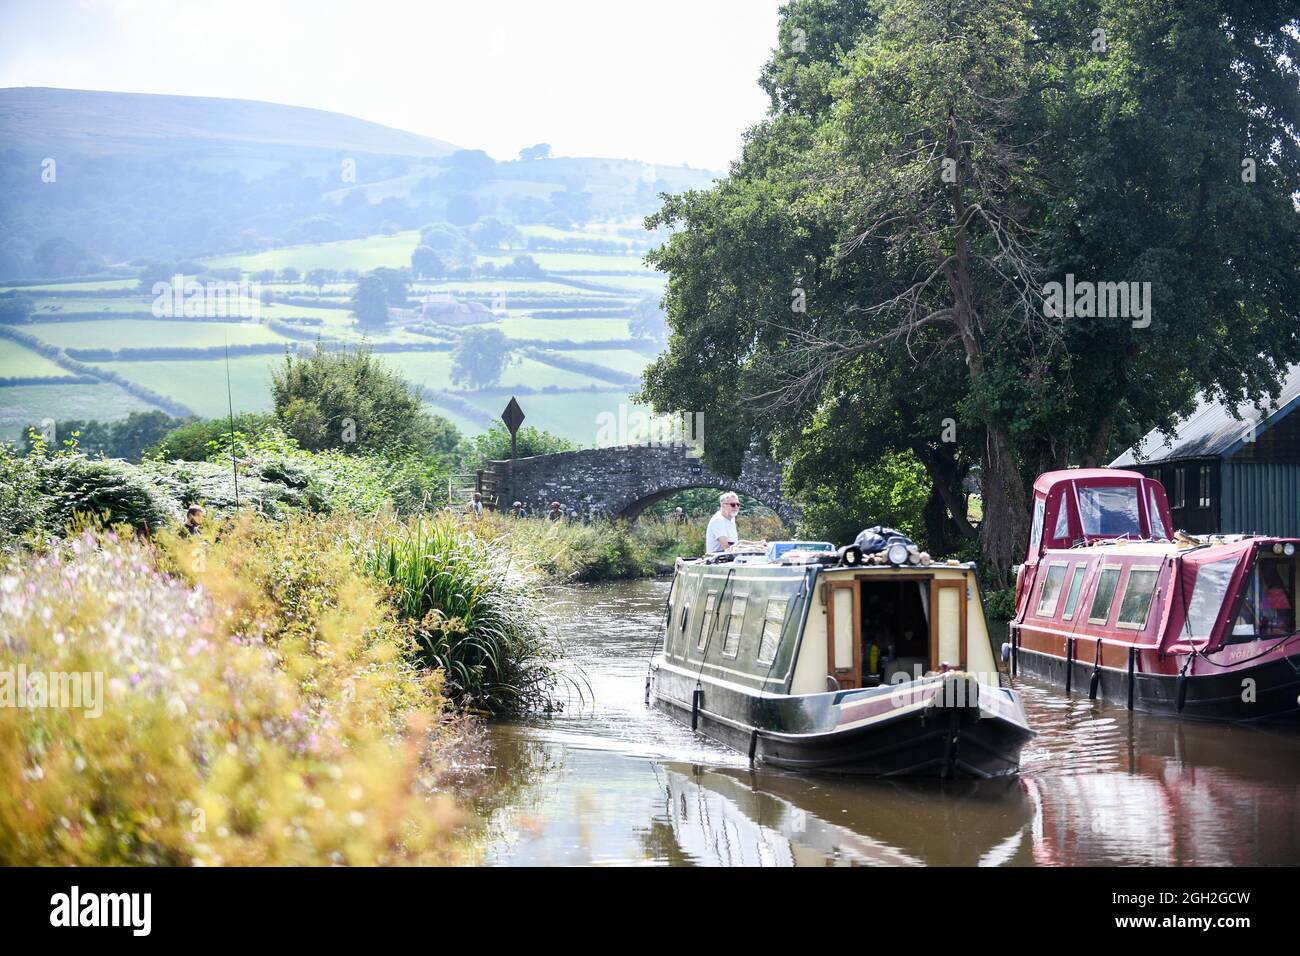 Une belle scène comme une barge voyage le long du Monbucshire et du canal de Brecon dans le sud du pays de Galles un beau samedi après-midi tandis que les gens apprécient le temps de la fin de l'été à travers le Royaume-Uni. Banque D'Images